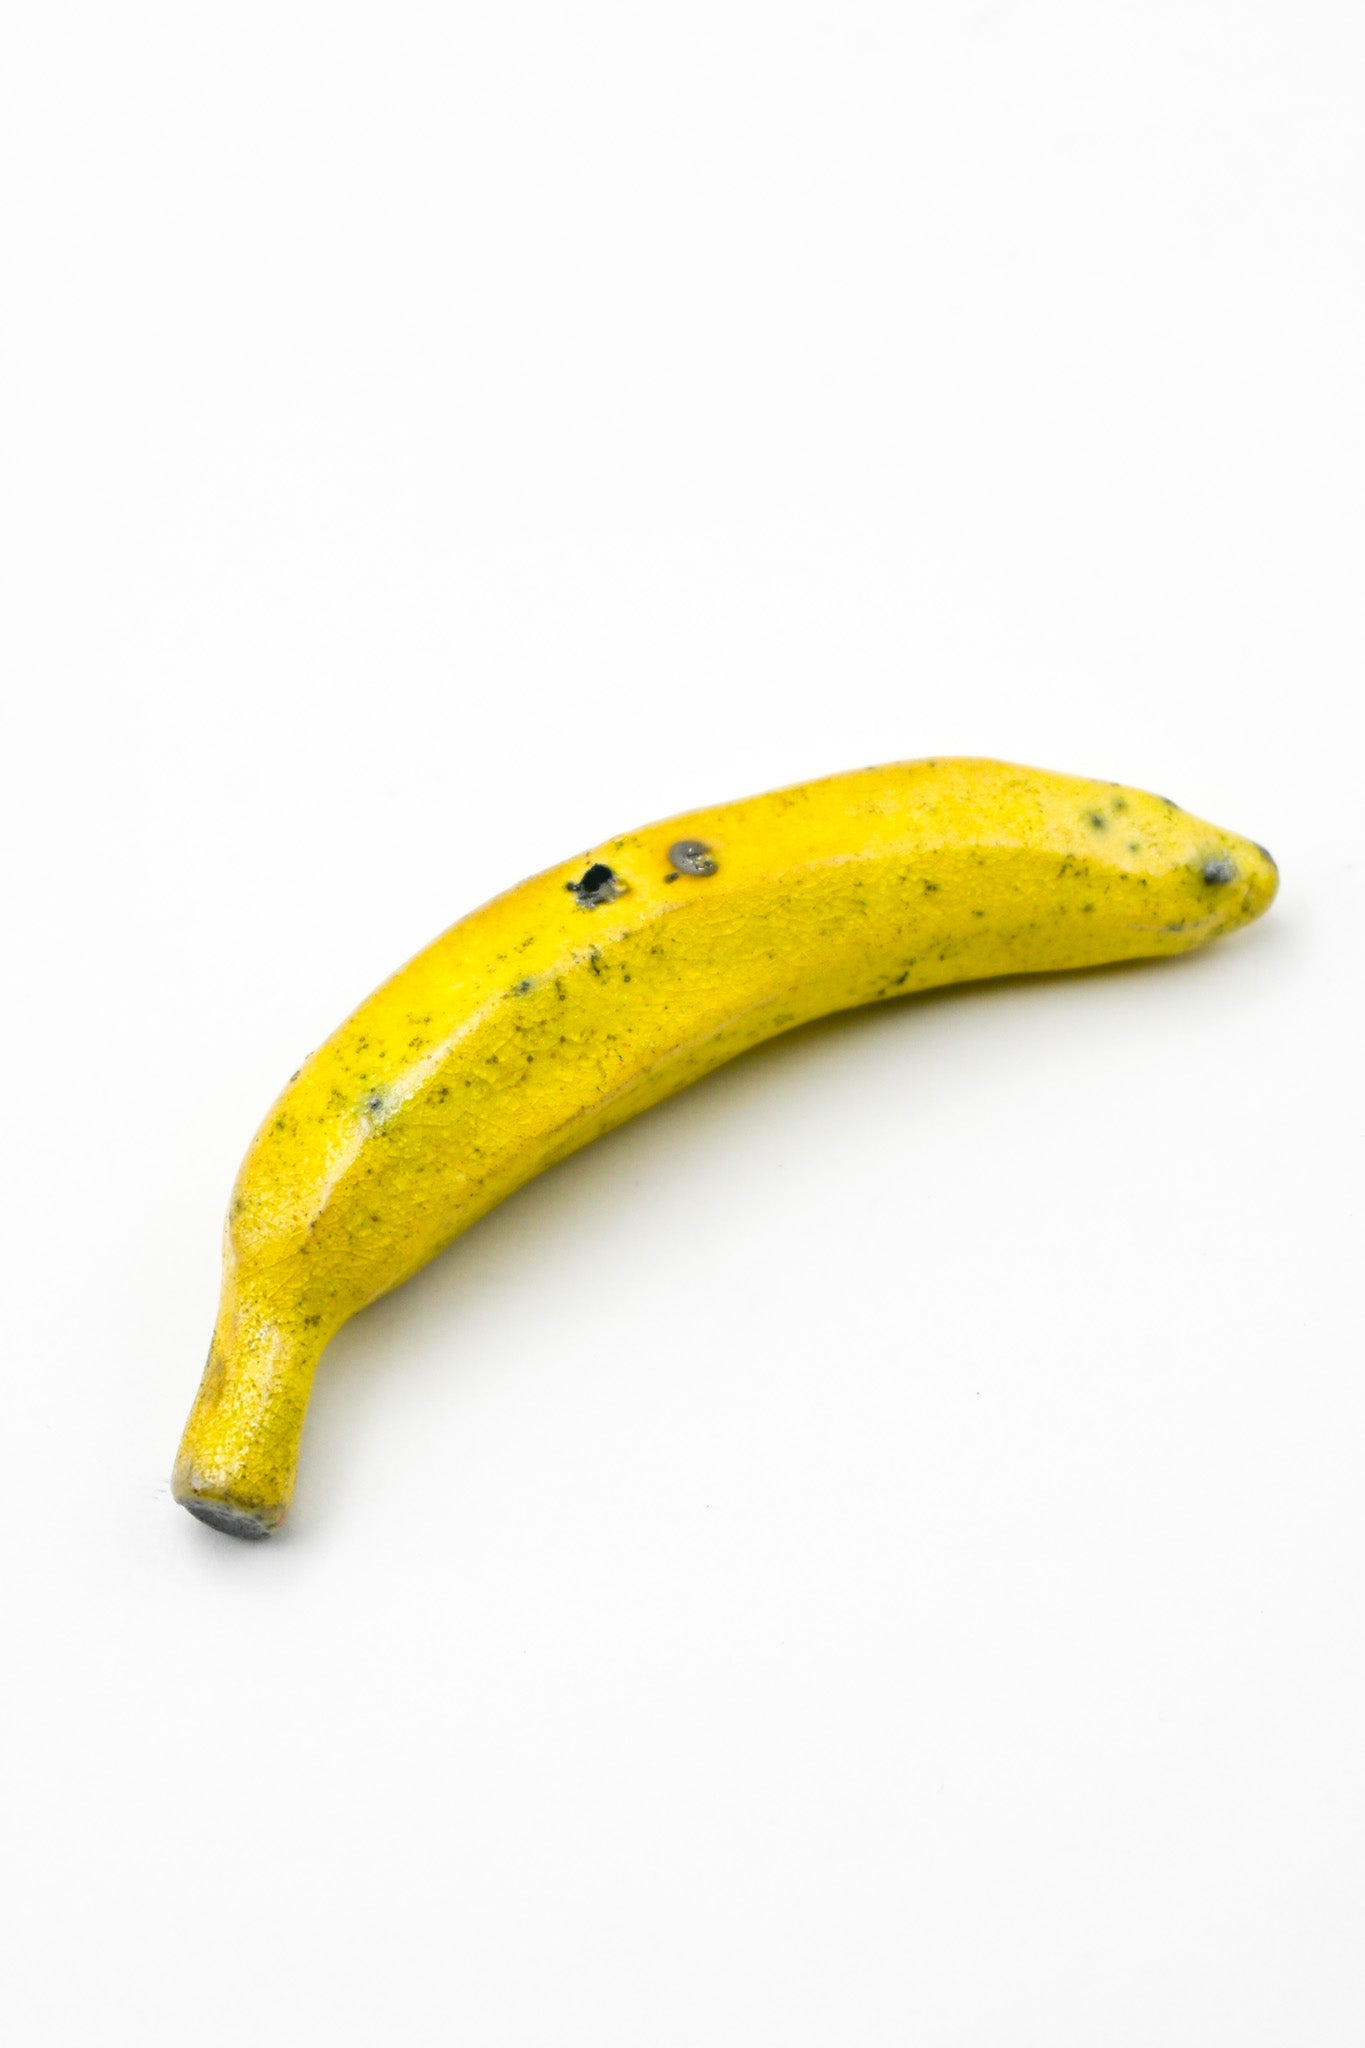 Raku Fired Banana